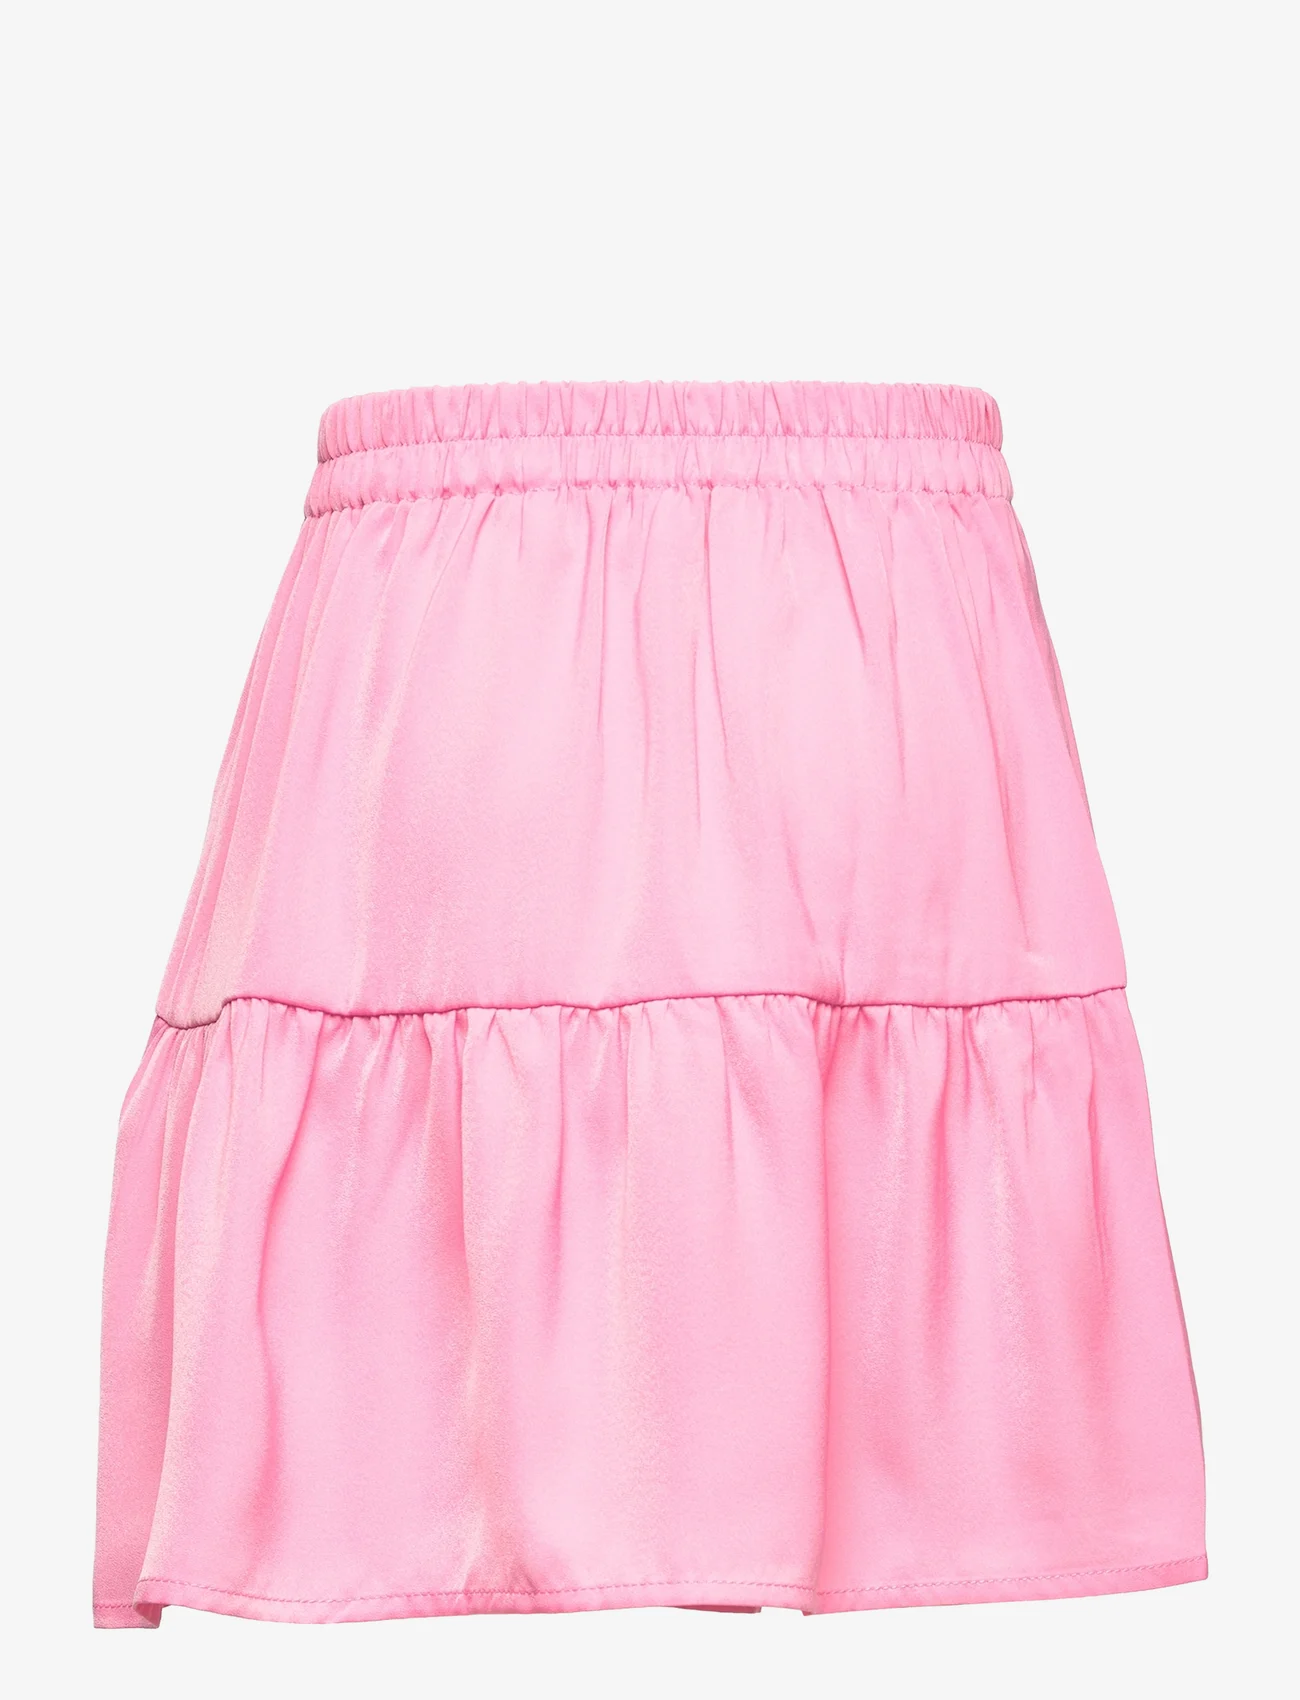 Rosemunde Kids - Skirt - short skirts - bubblegum pink - 1